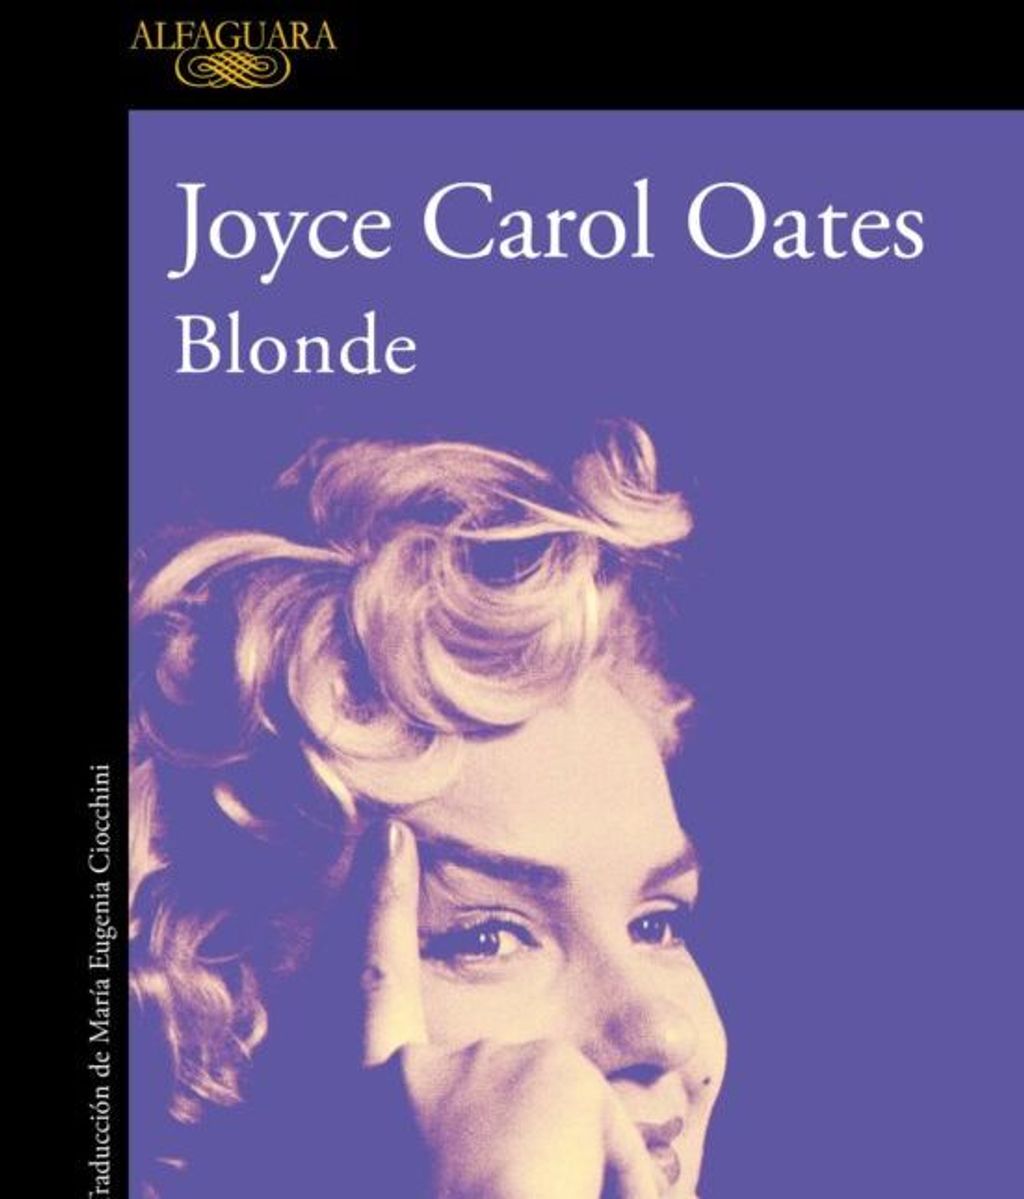 Portada del libro Blonde, de Joyce Carol Oates